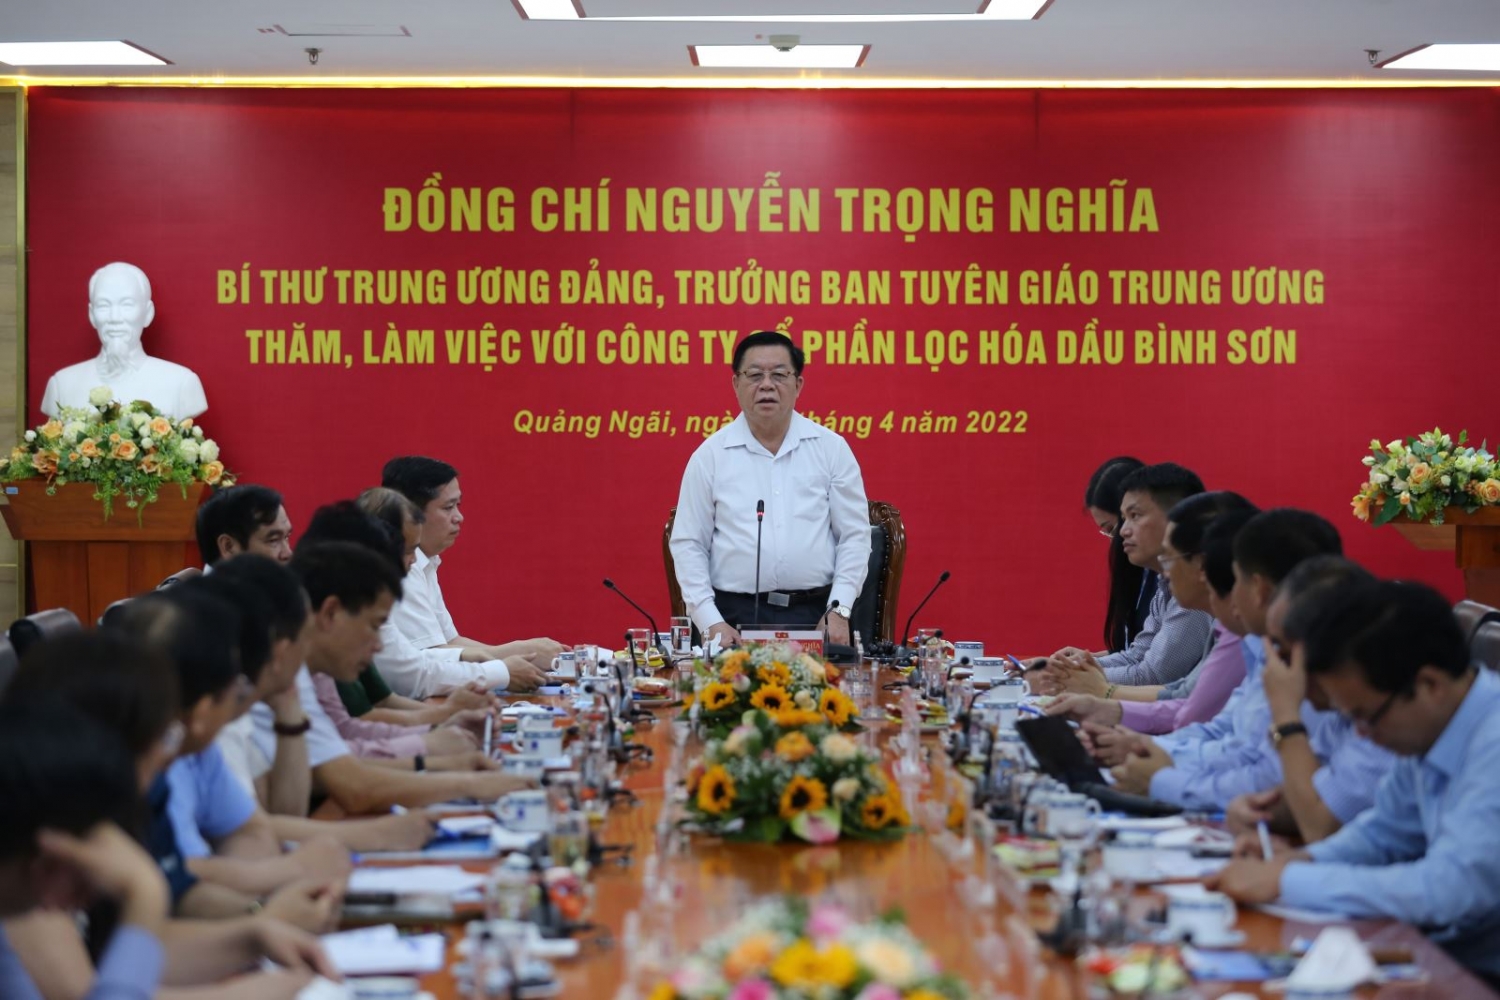 Bí thư Trung ương Đảng, Trưởng ban Tuyên giáo Trung ương Nguyễn Trọng Nghĩa: “BSR cần đoàn kết, vươn lên thành doanh nghiệp tầm cỡ khu vực”